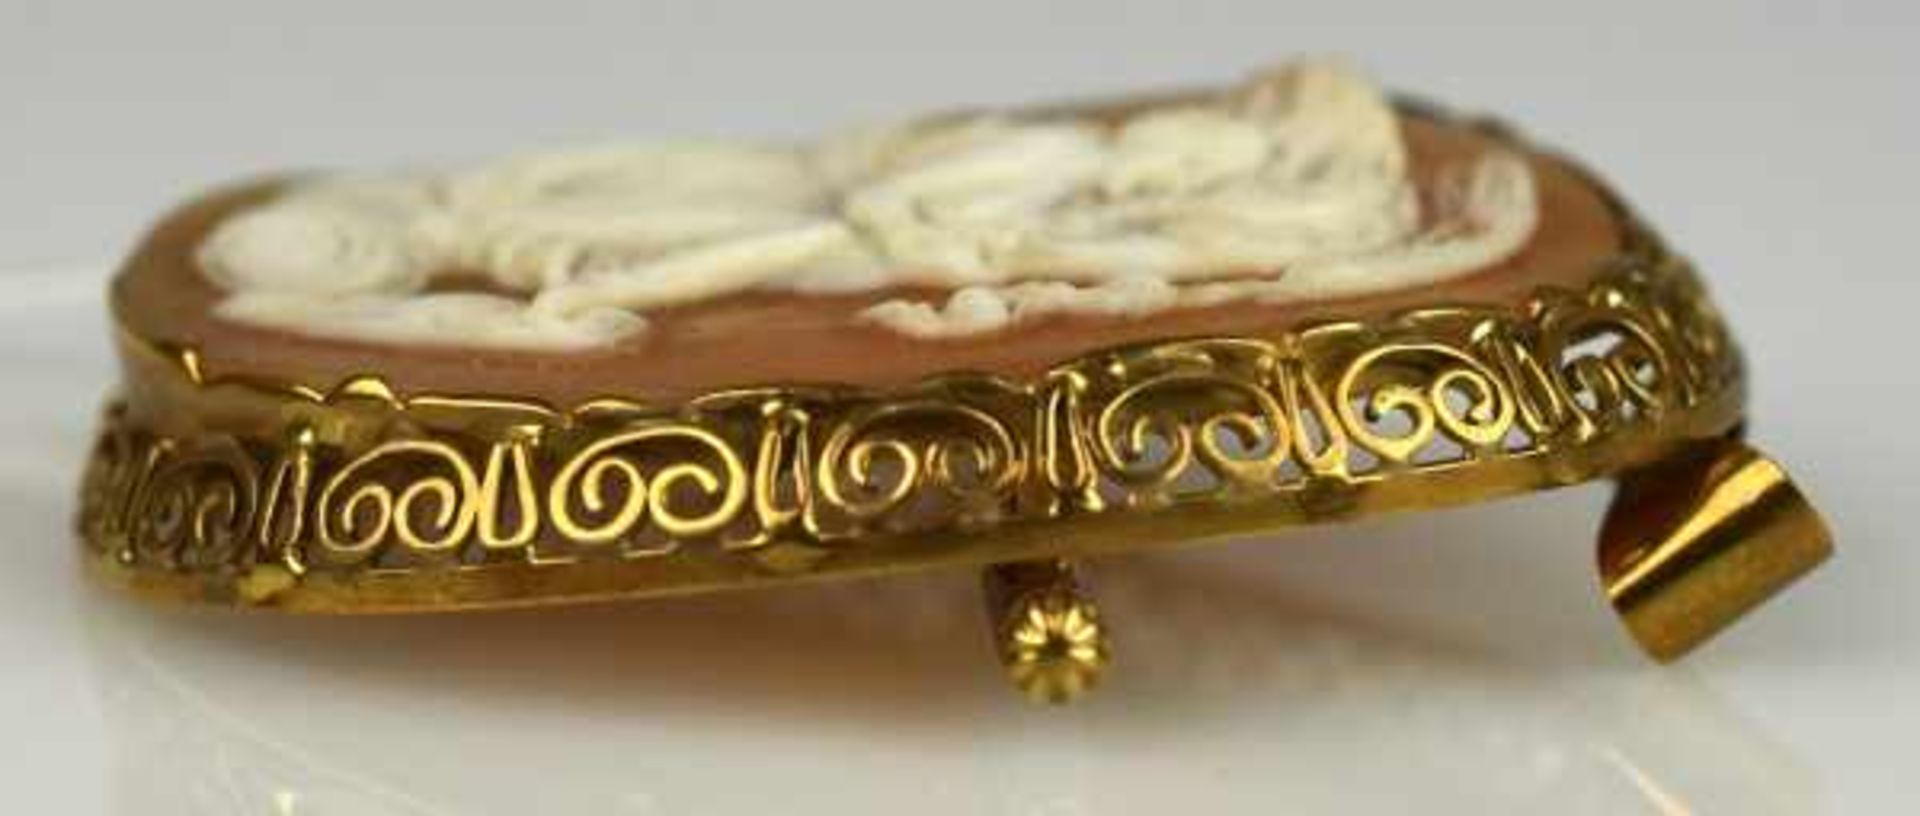 CAMEE oval, antikes Motiv mit Frau und Adler in Muschel geschnitten, durchbrochener Goldrahmen - Image 3 of 3